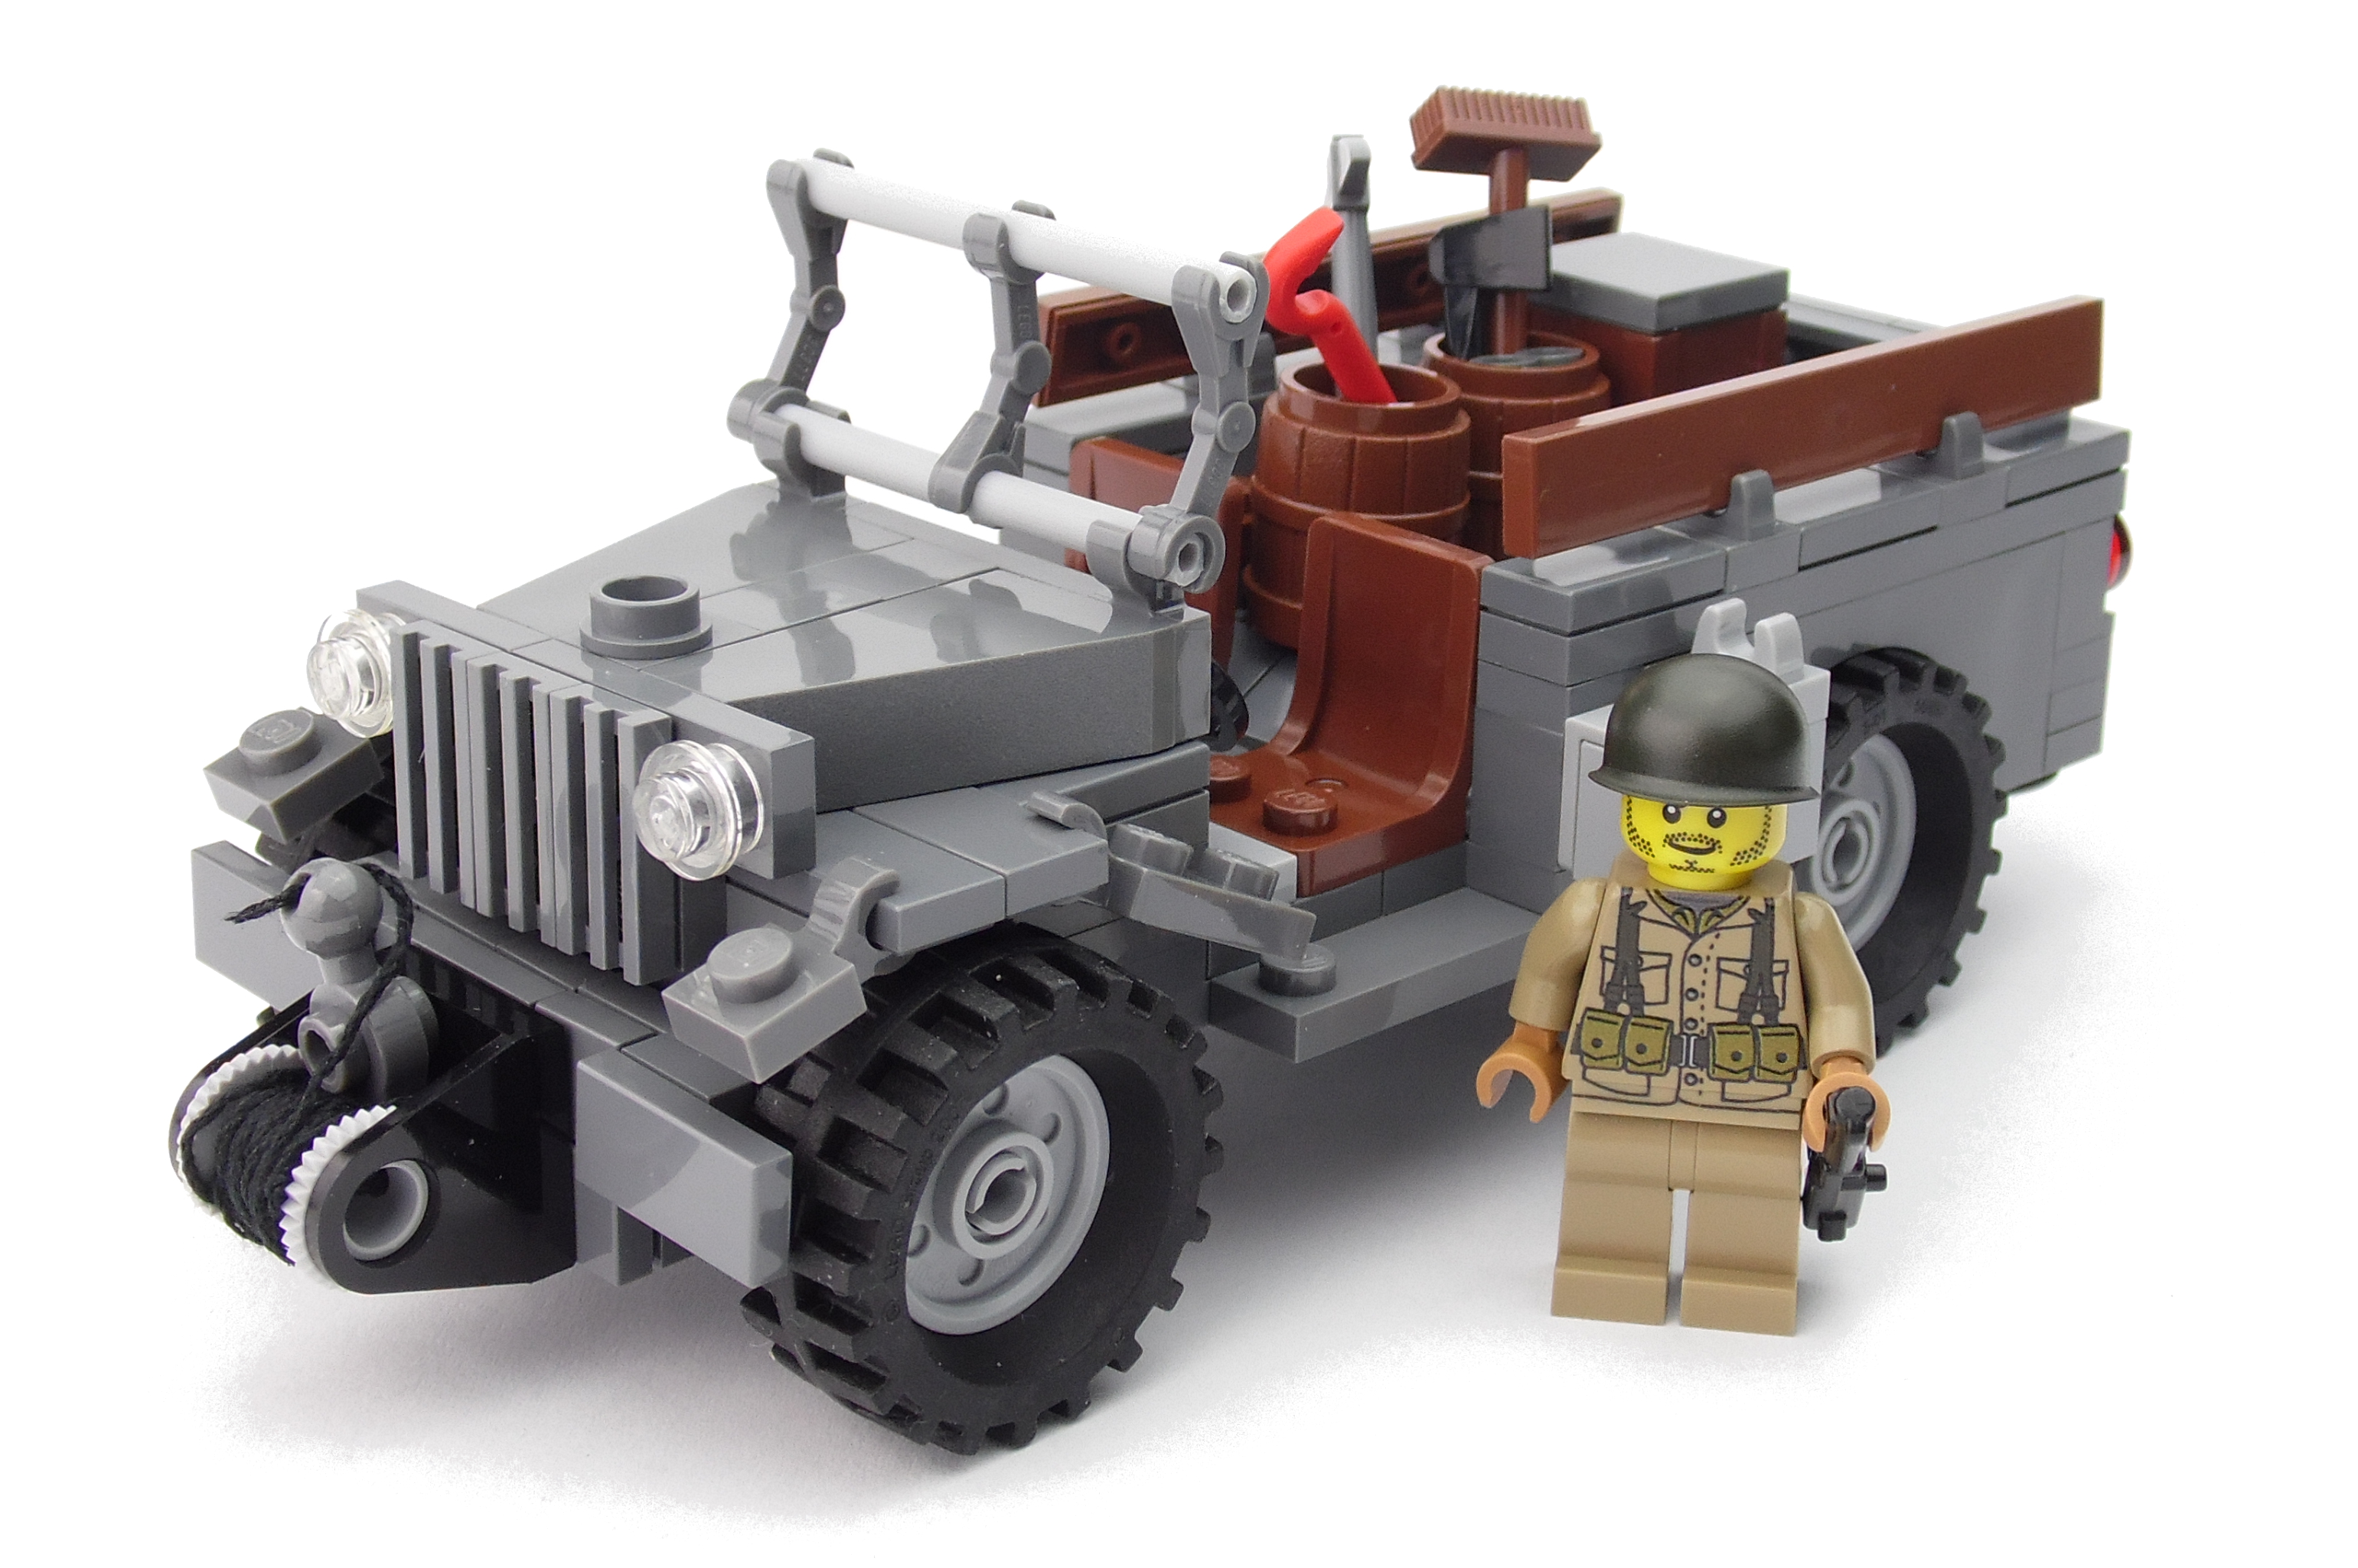 US Jeep Dodge WC 51 aus LEGO® Steinen. Leichter WW2 Truck der US Armee